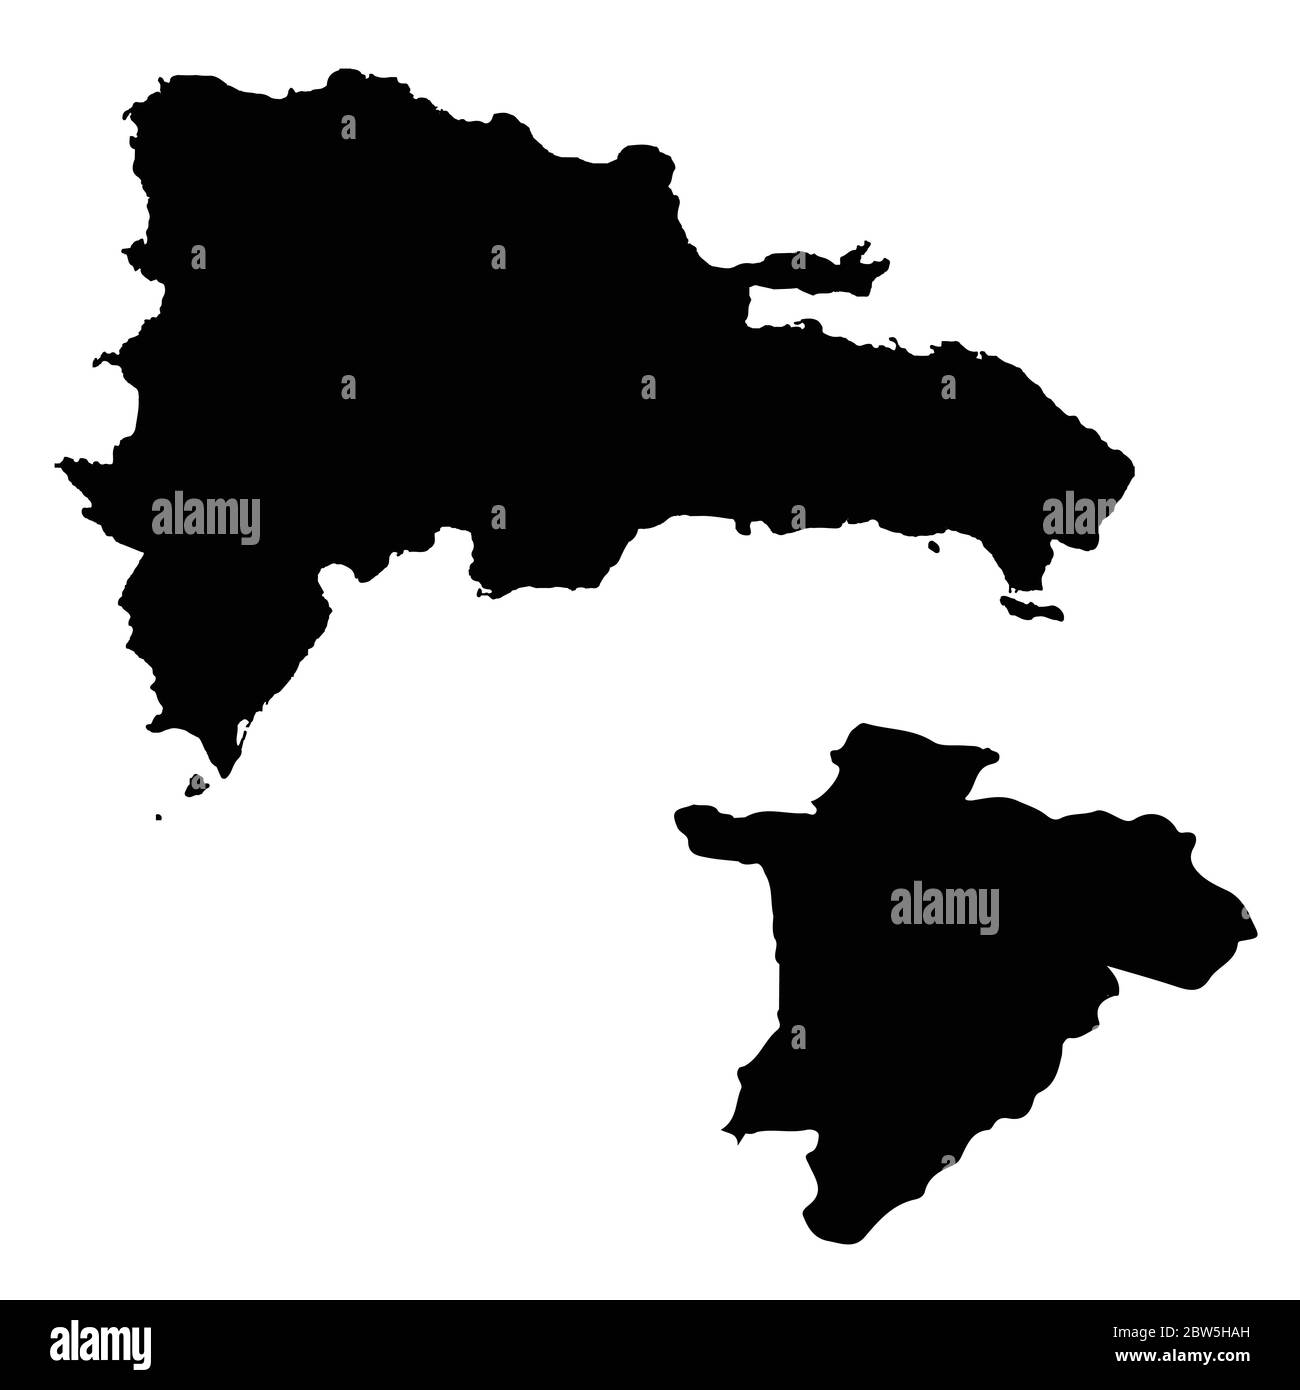 Vektorkarte Dominikanische Republik und Santo Domingo. Land und Hauptstadt. Isolierte Vektorgrafik. Schwarz auf weißem Hintergrund. EPS 10-Abbildung. Stock Vektor